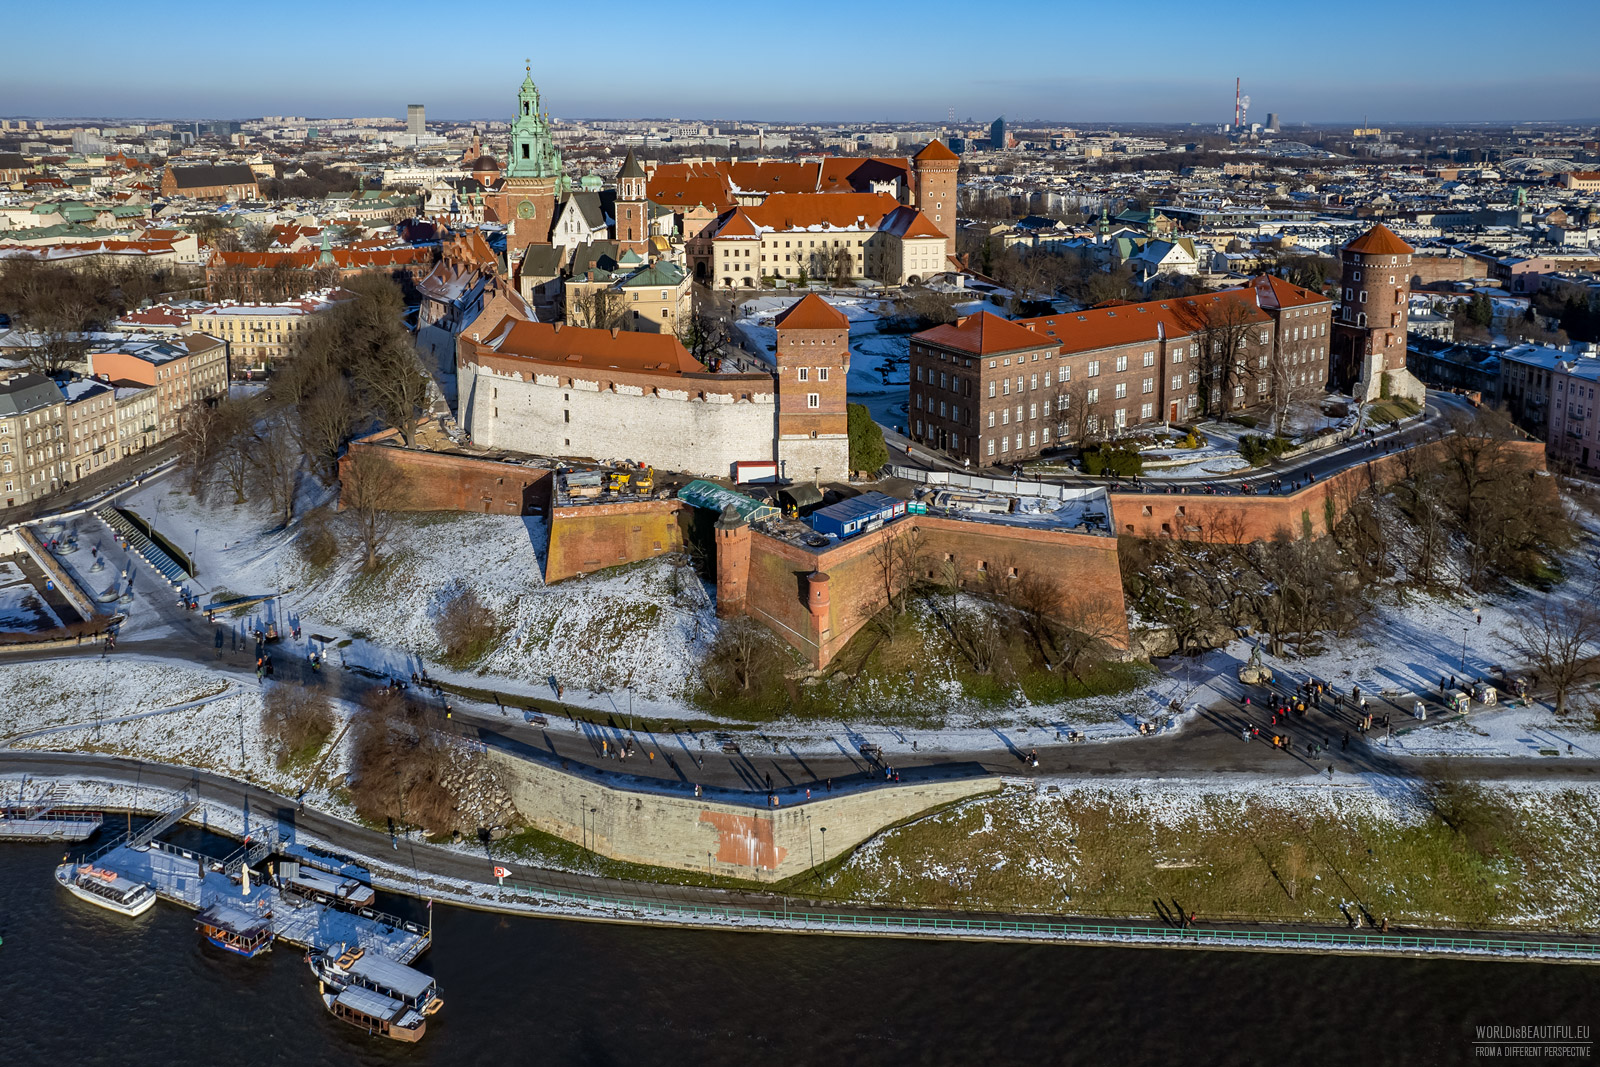 Widok na Wawel od strony Wisły